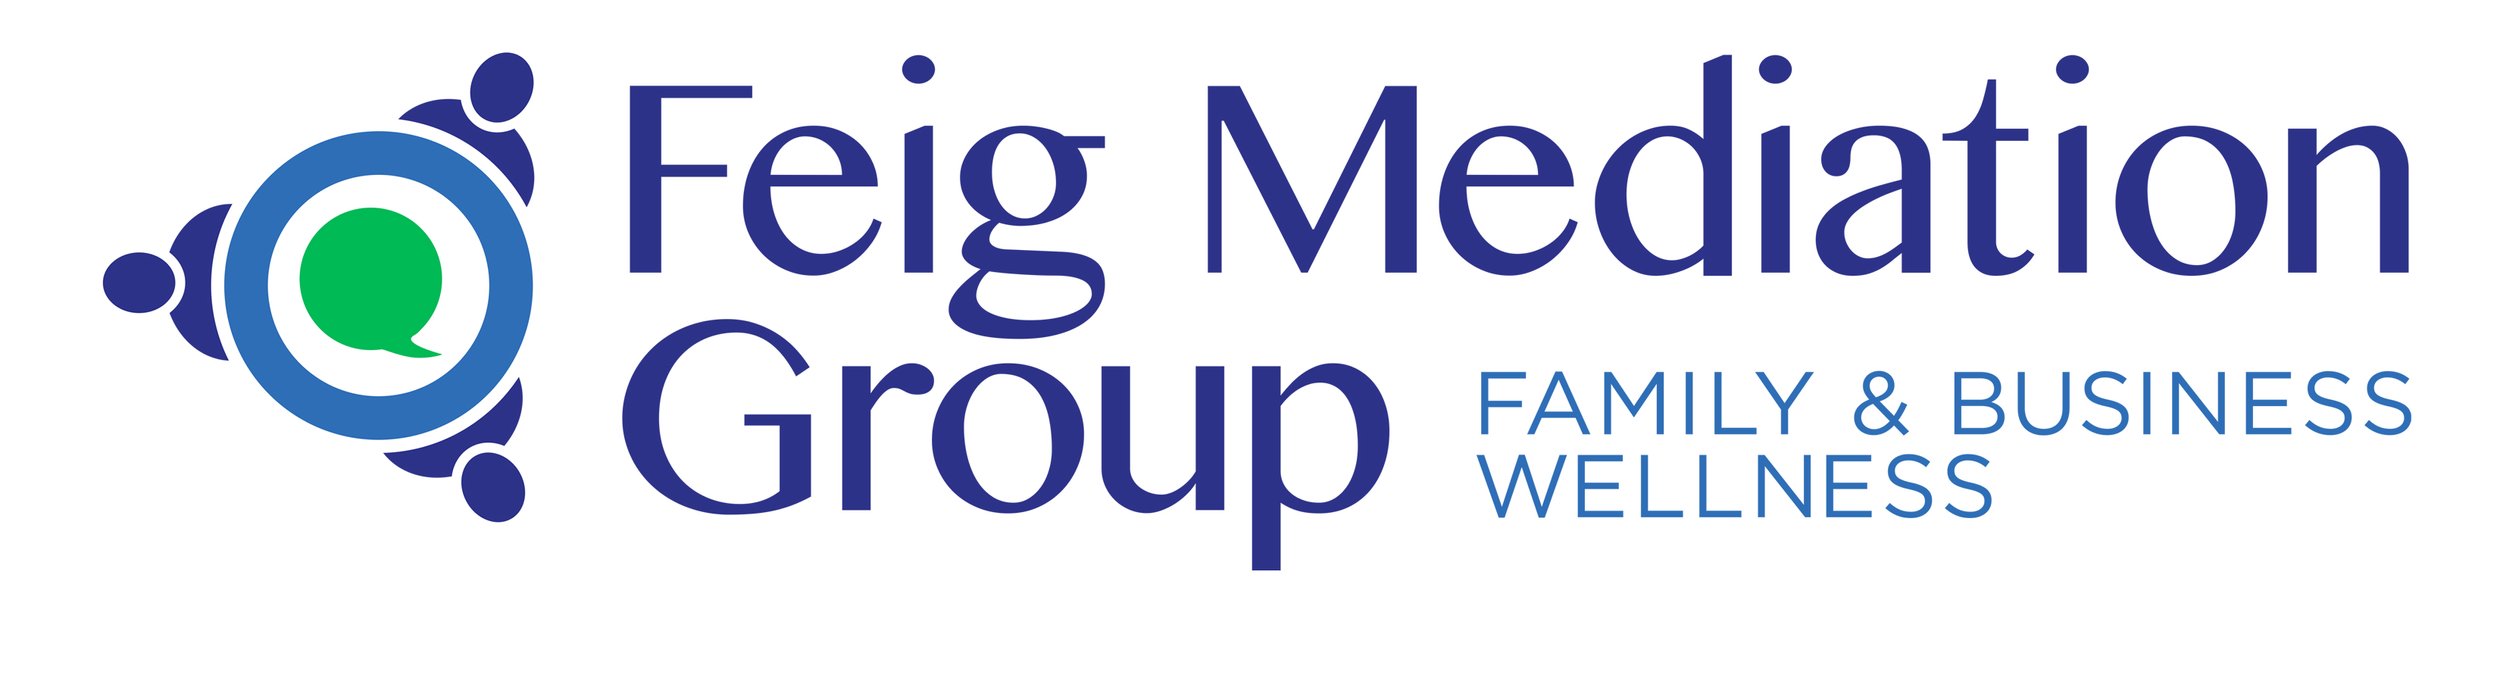 Feig Mediation Group LLC